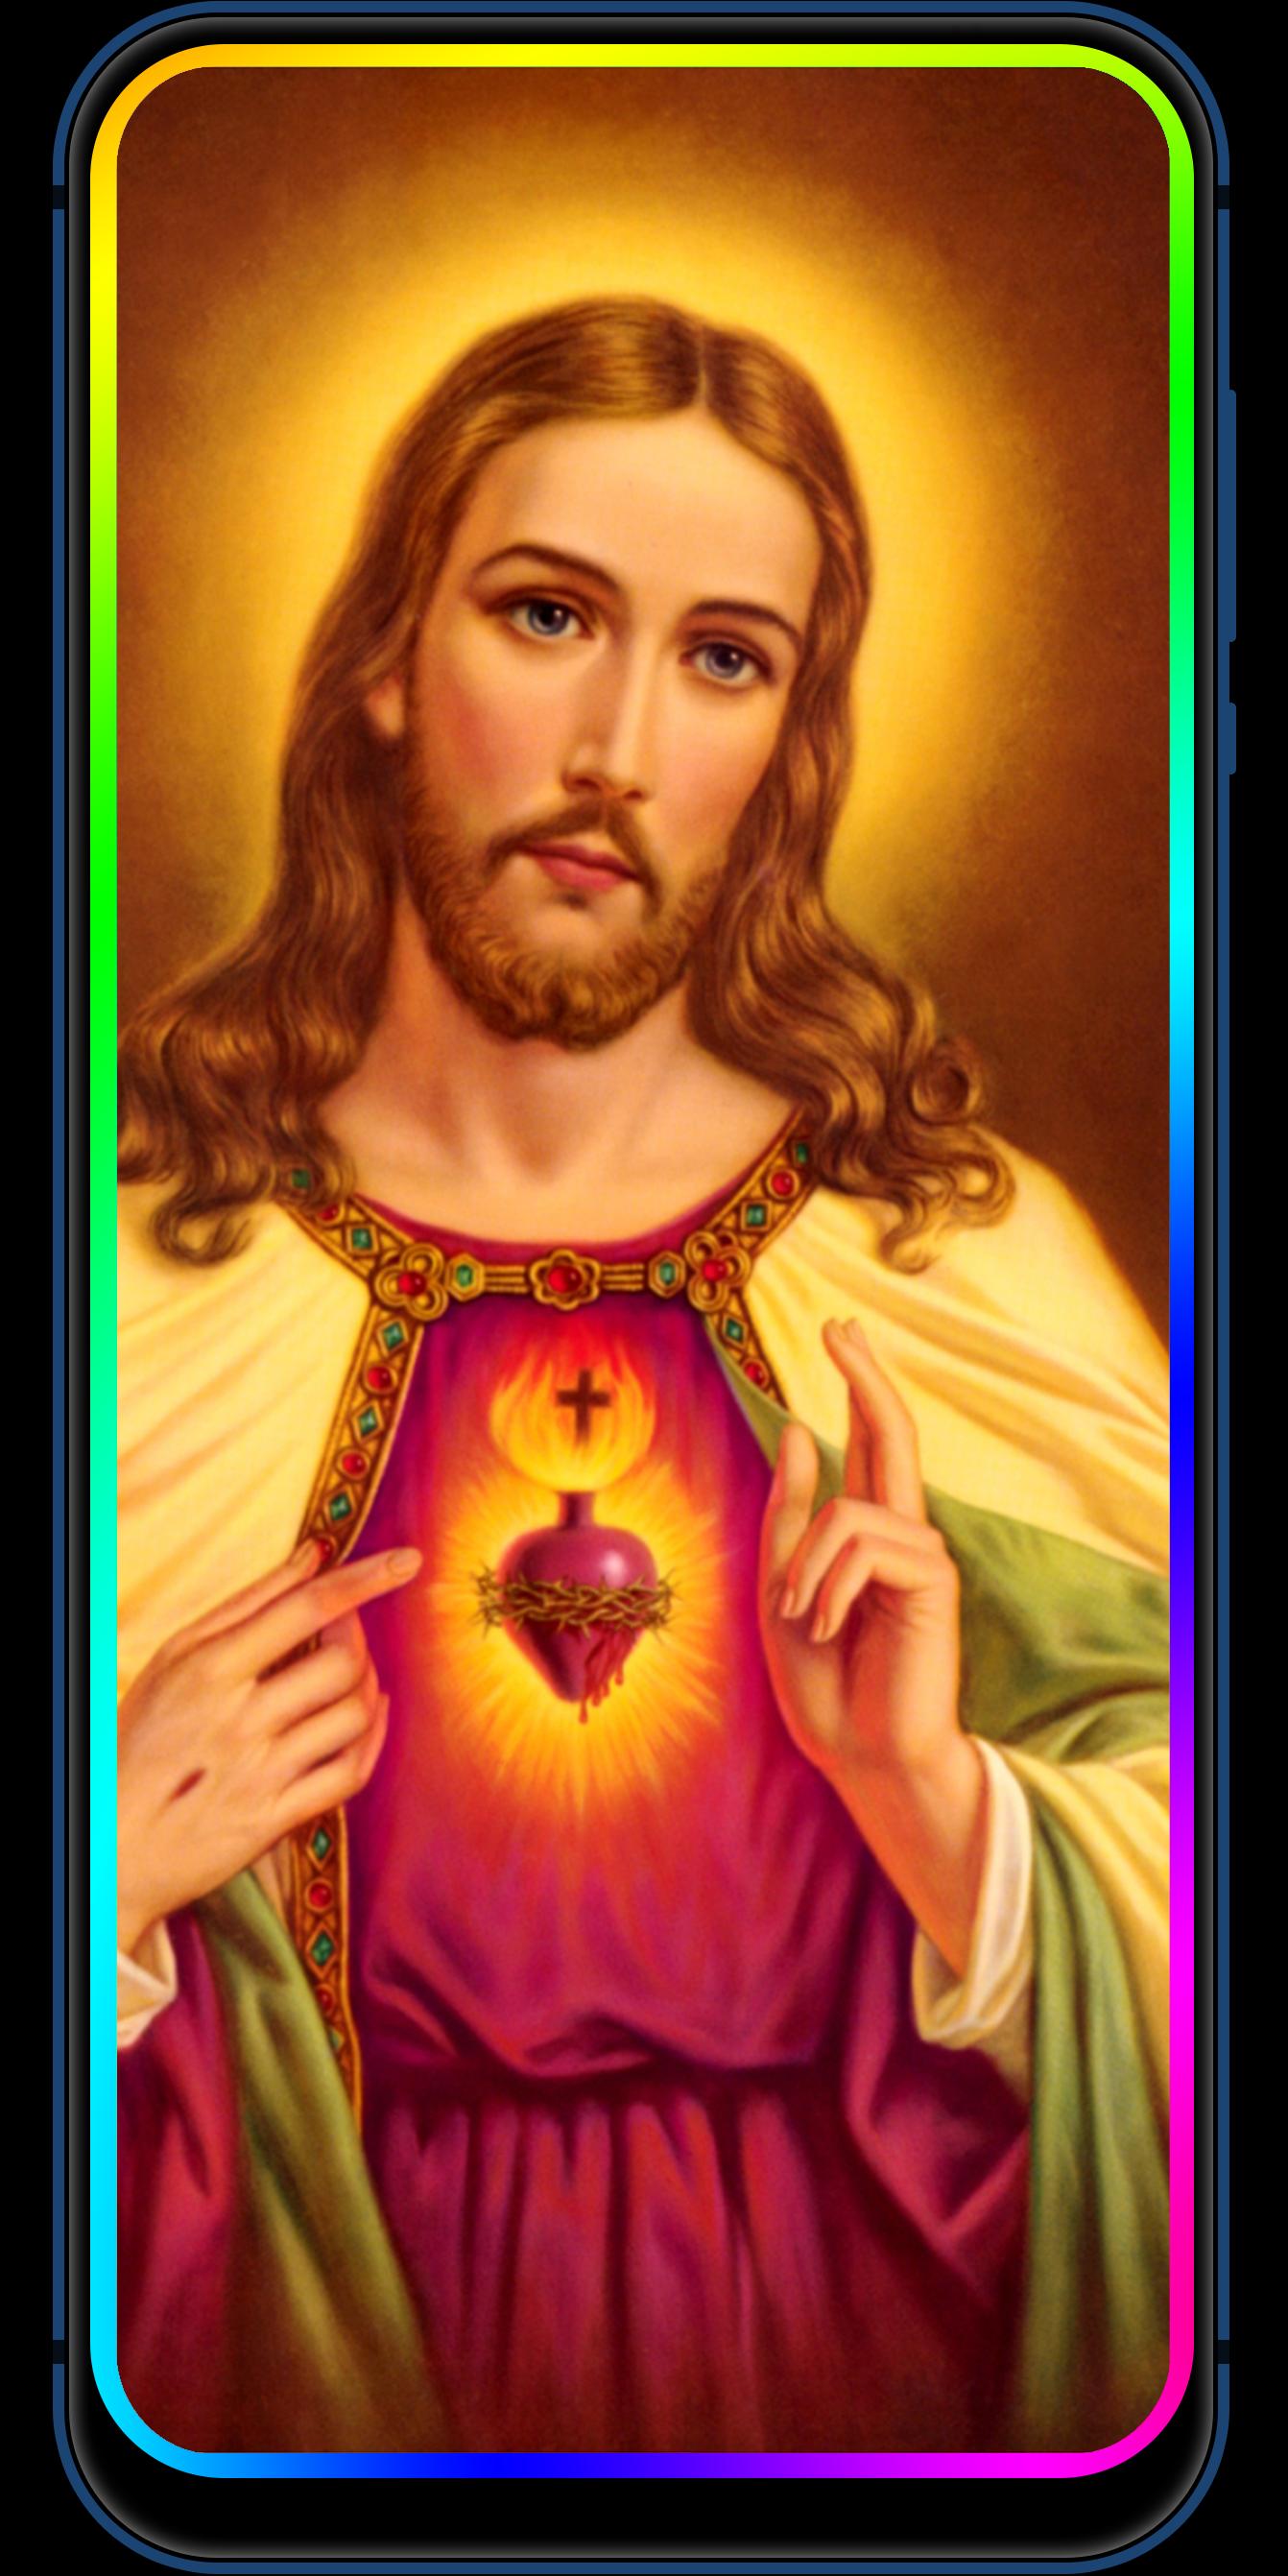 40+] Jesus Wallpaper for Phone - WallpaperSafari